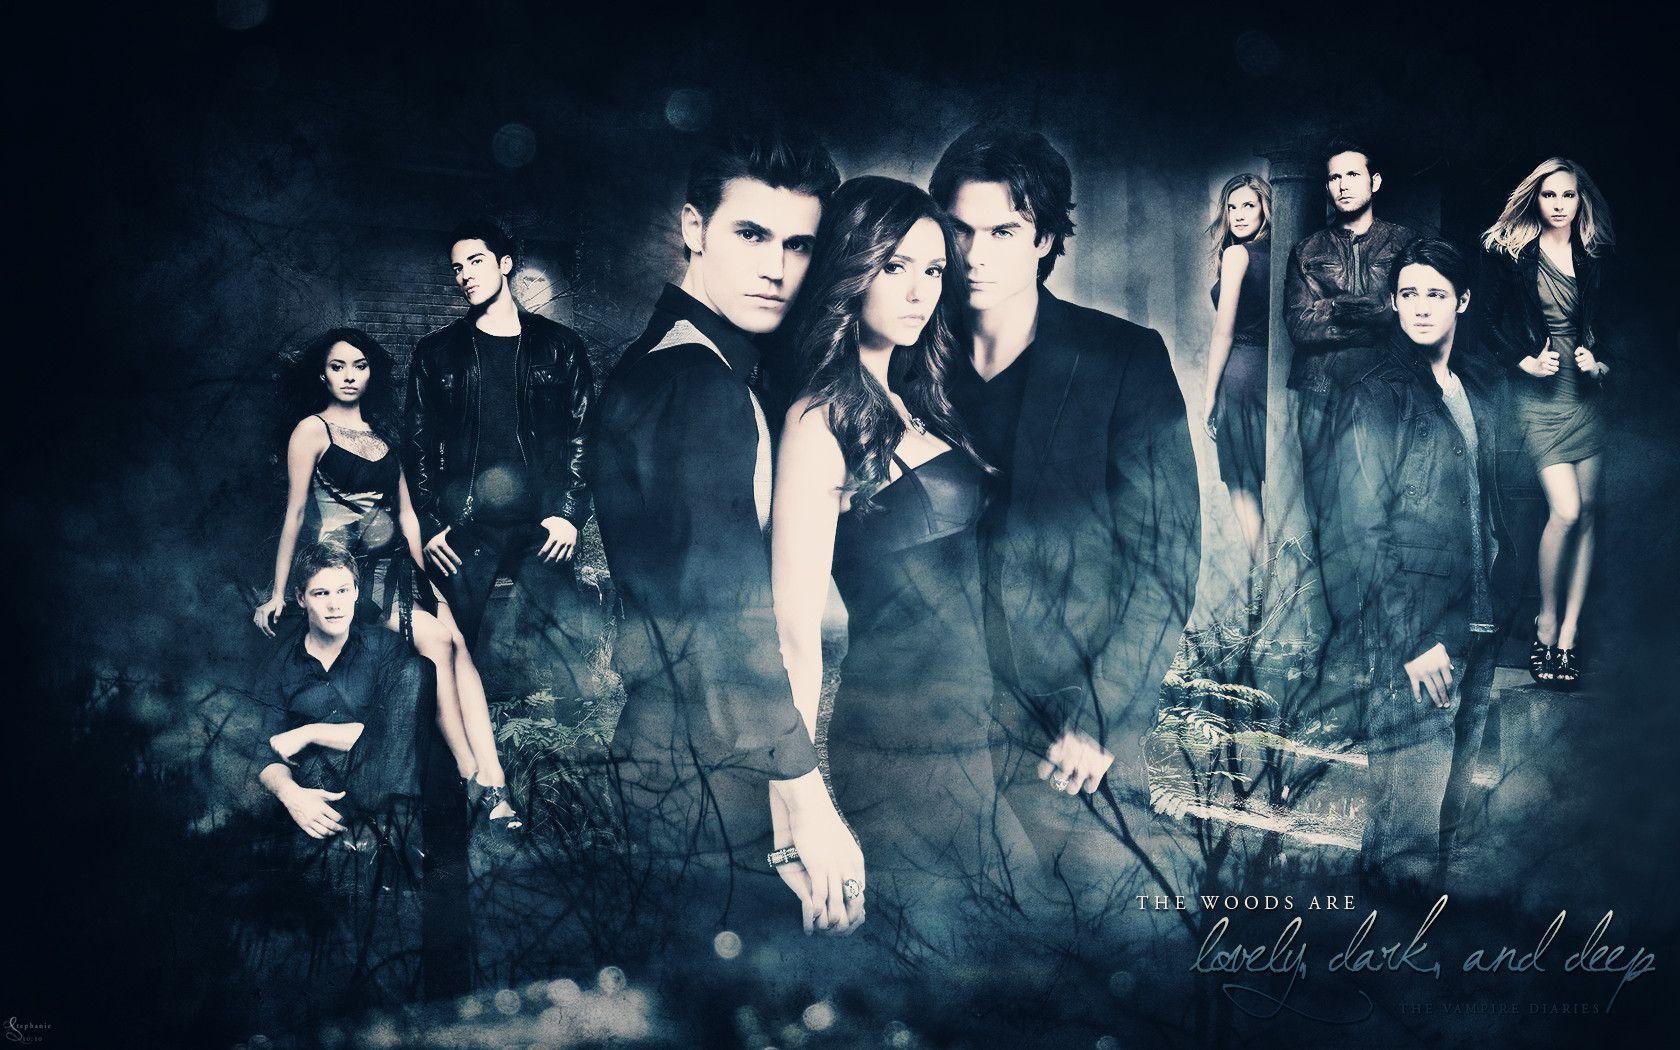 The Vampire Diaries 24 45379 Image HD Wallpaper. Wallpaper